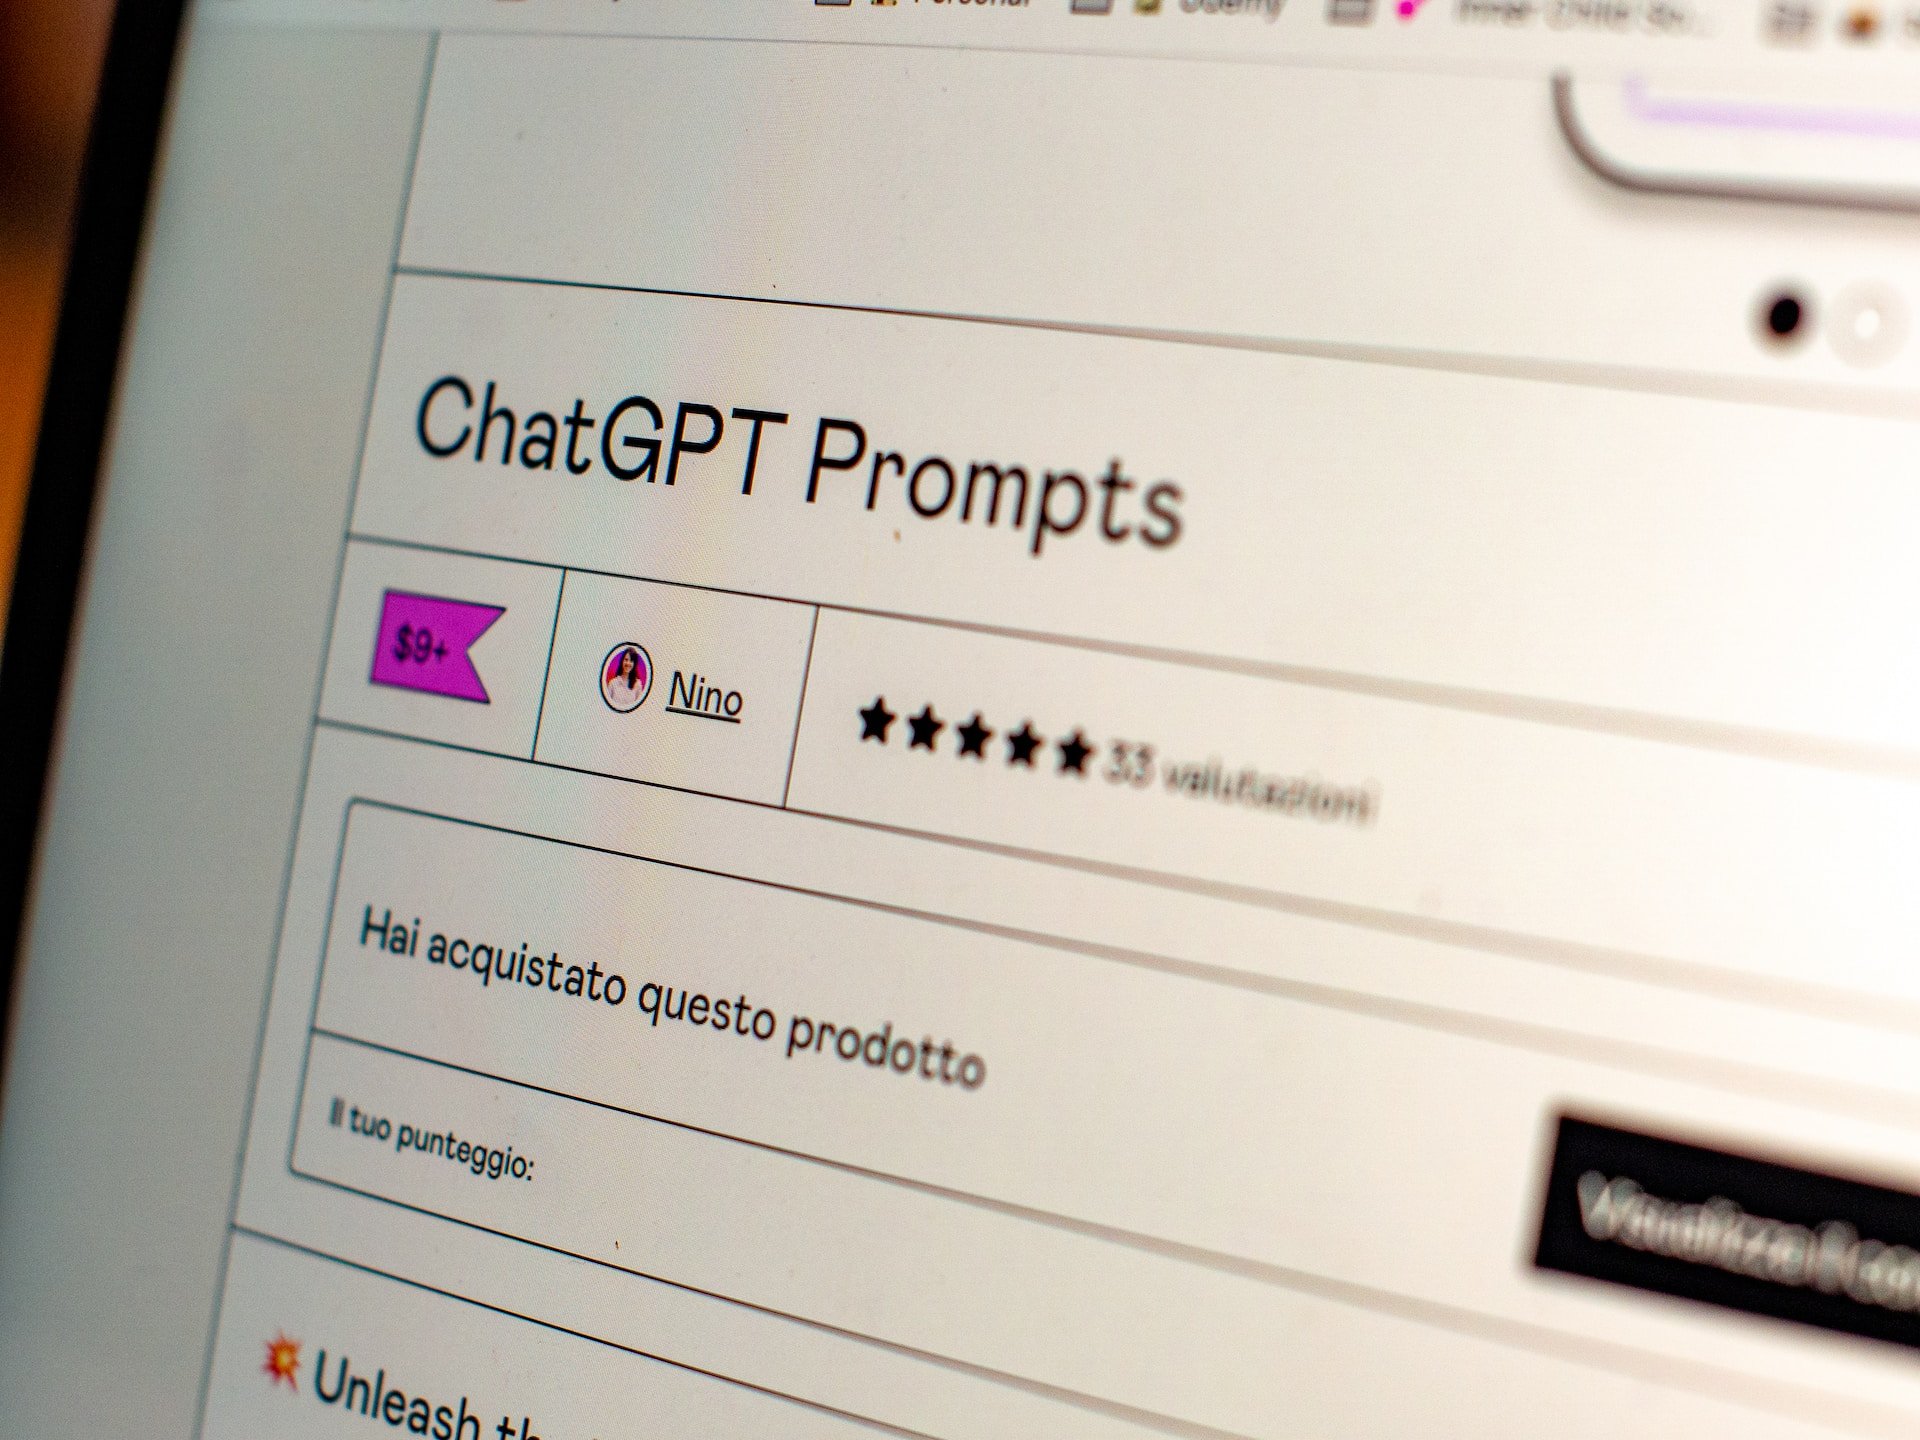 ChatGPT afirmou que vai cumprir decisão de suspender os serviços para usuários italianos. 